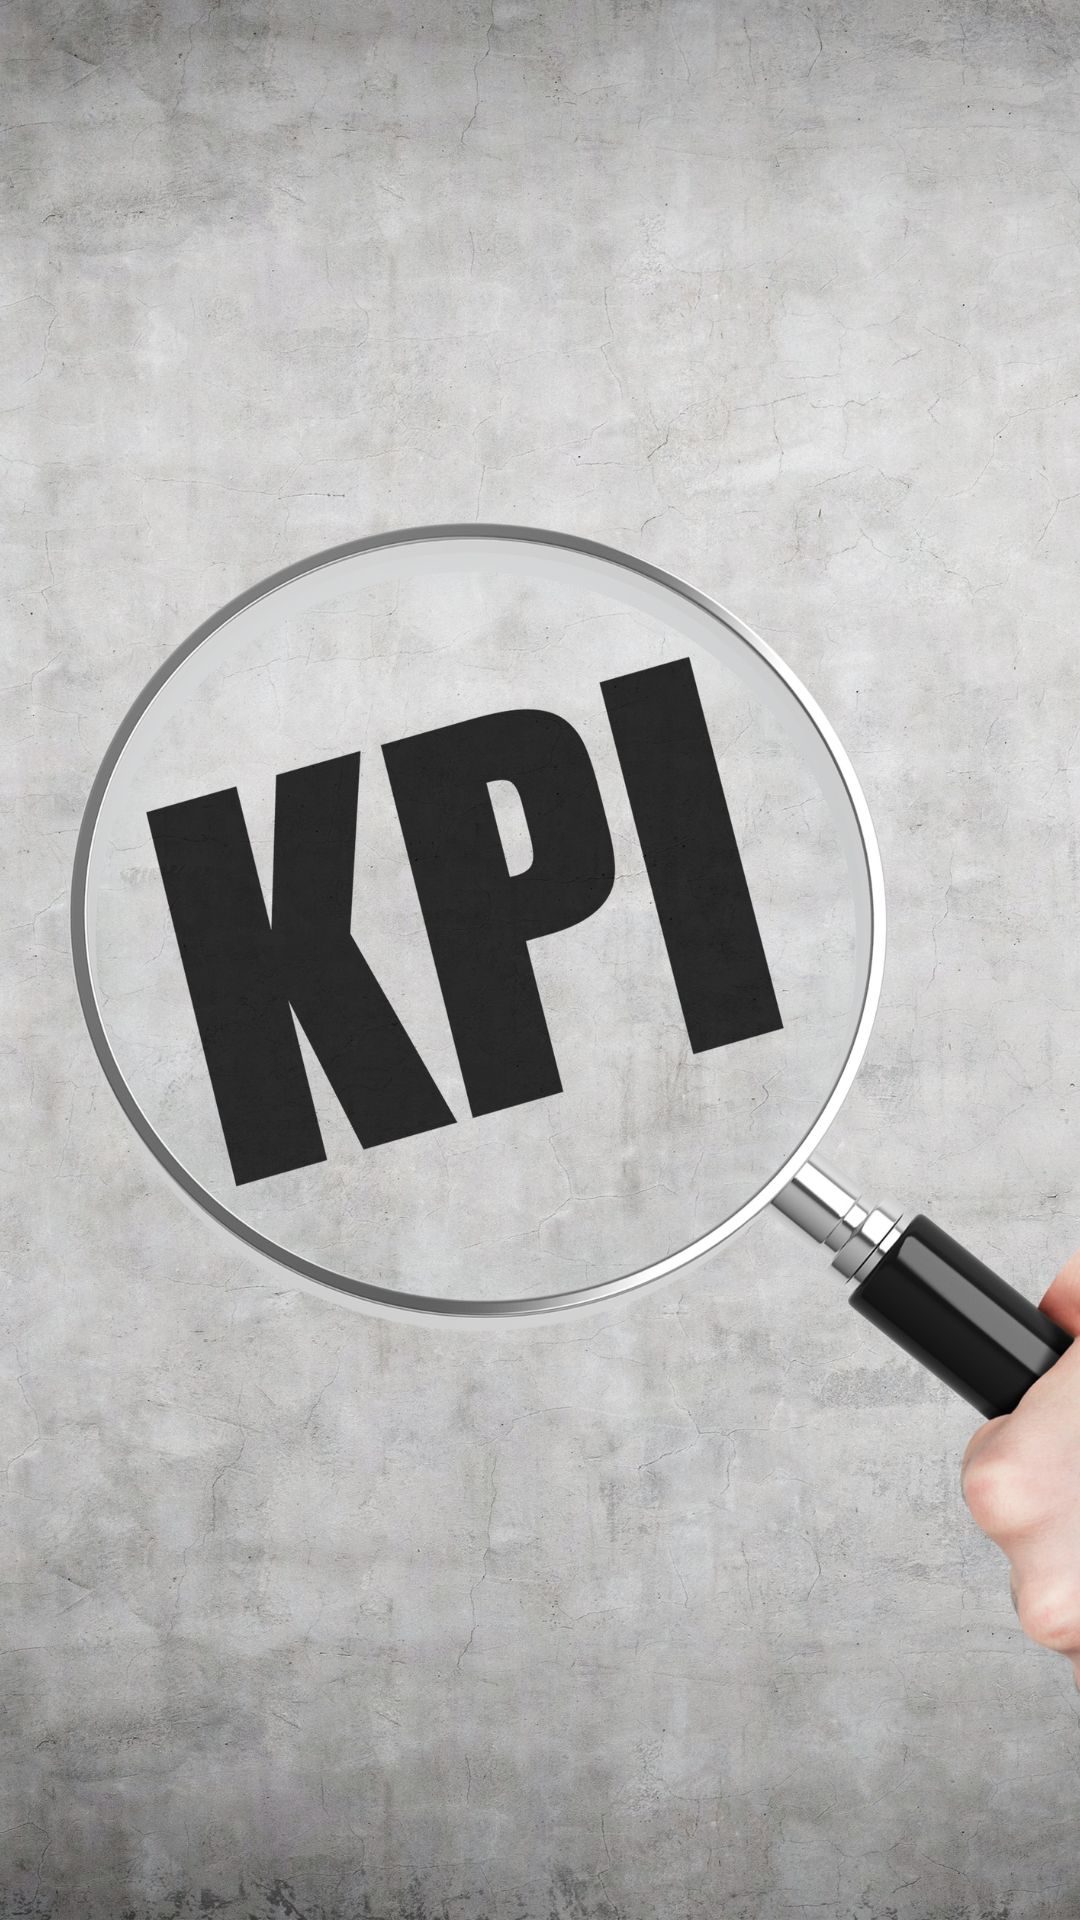 KPI in ppc campaign